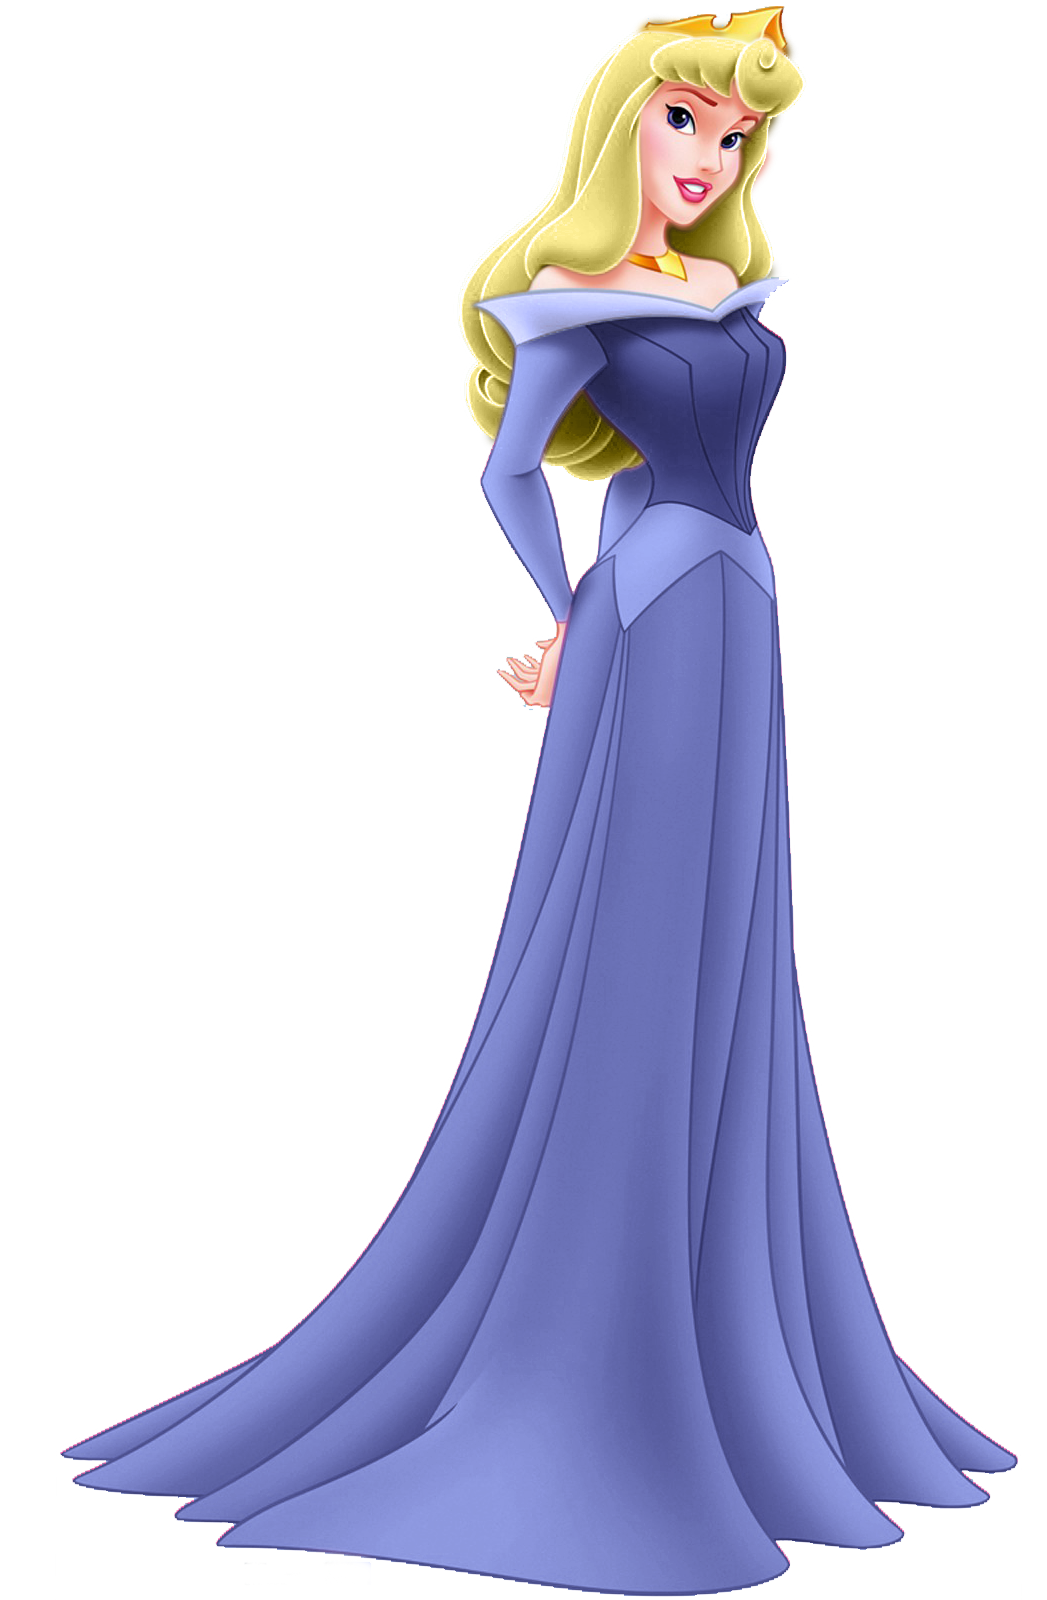 princess aurora peasant costume